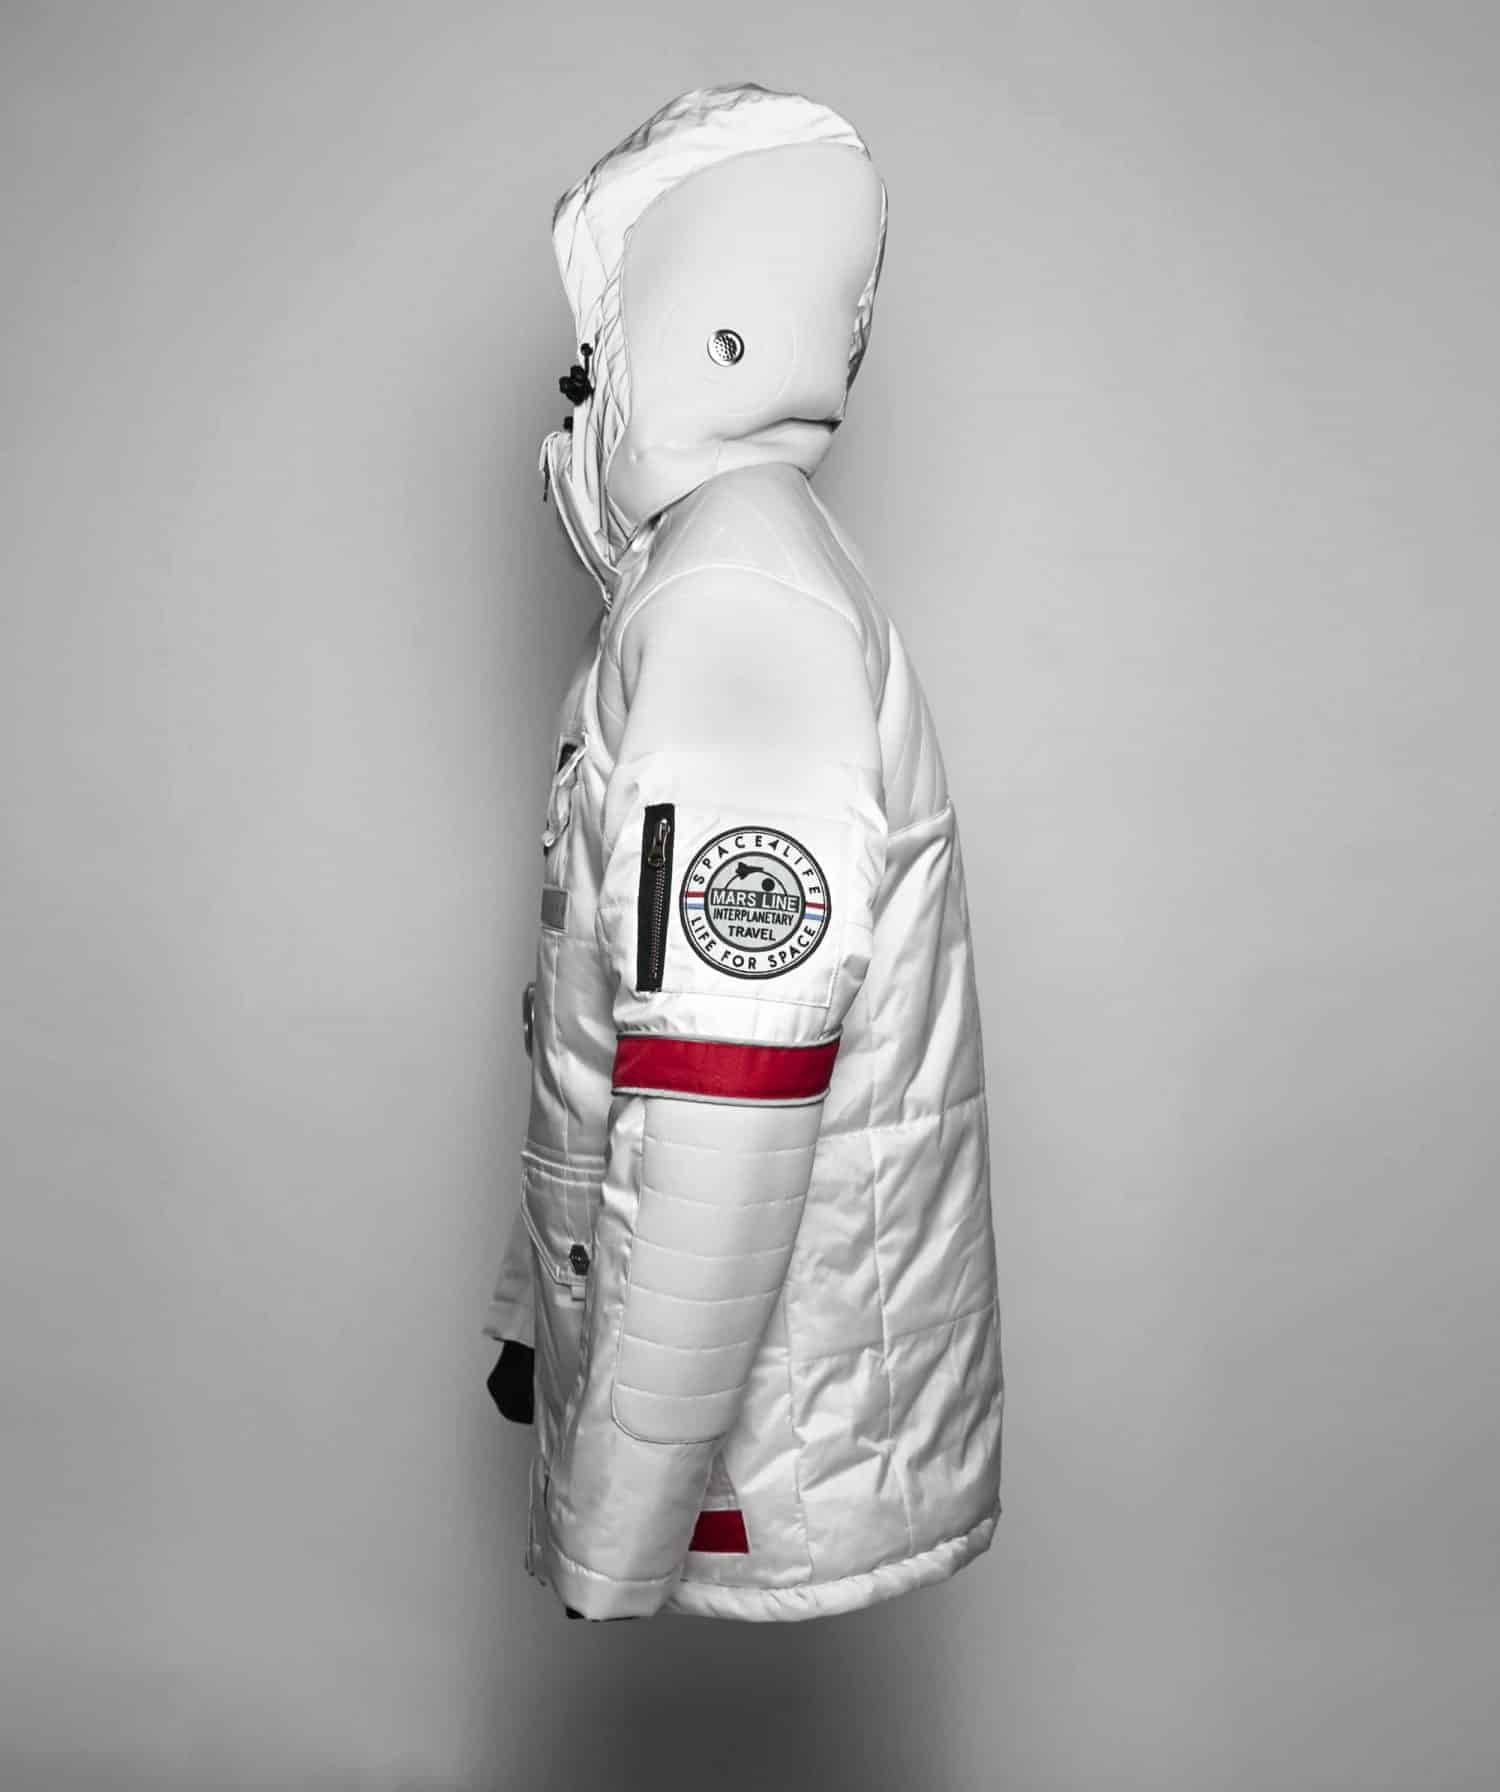 Met deze jas van Spacelife ben je klaar voor de toekomst